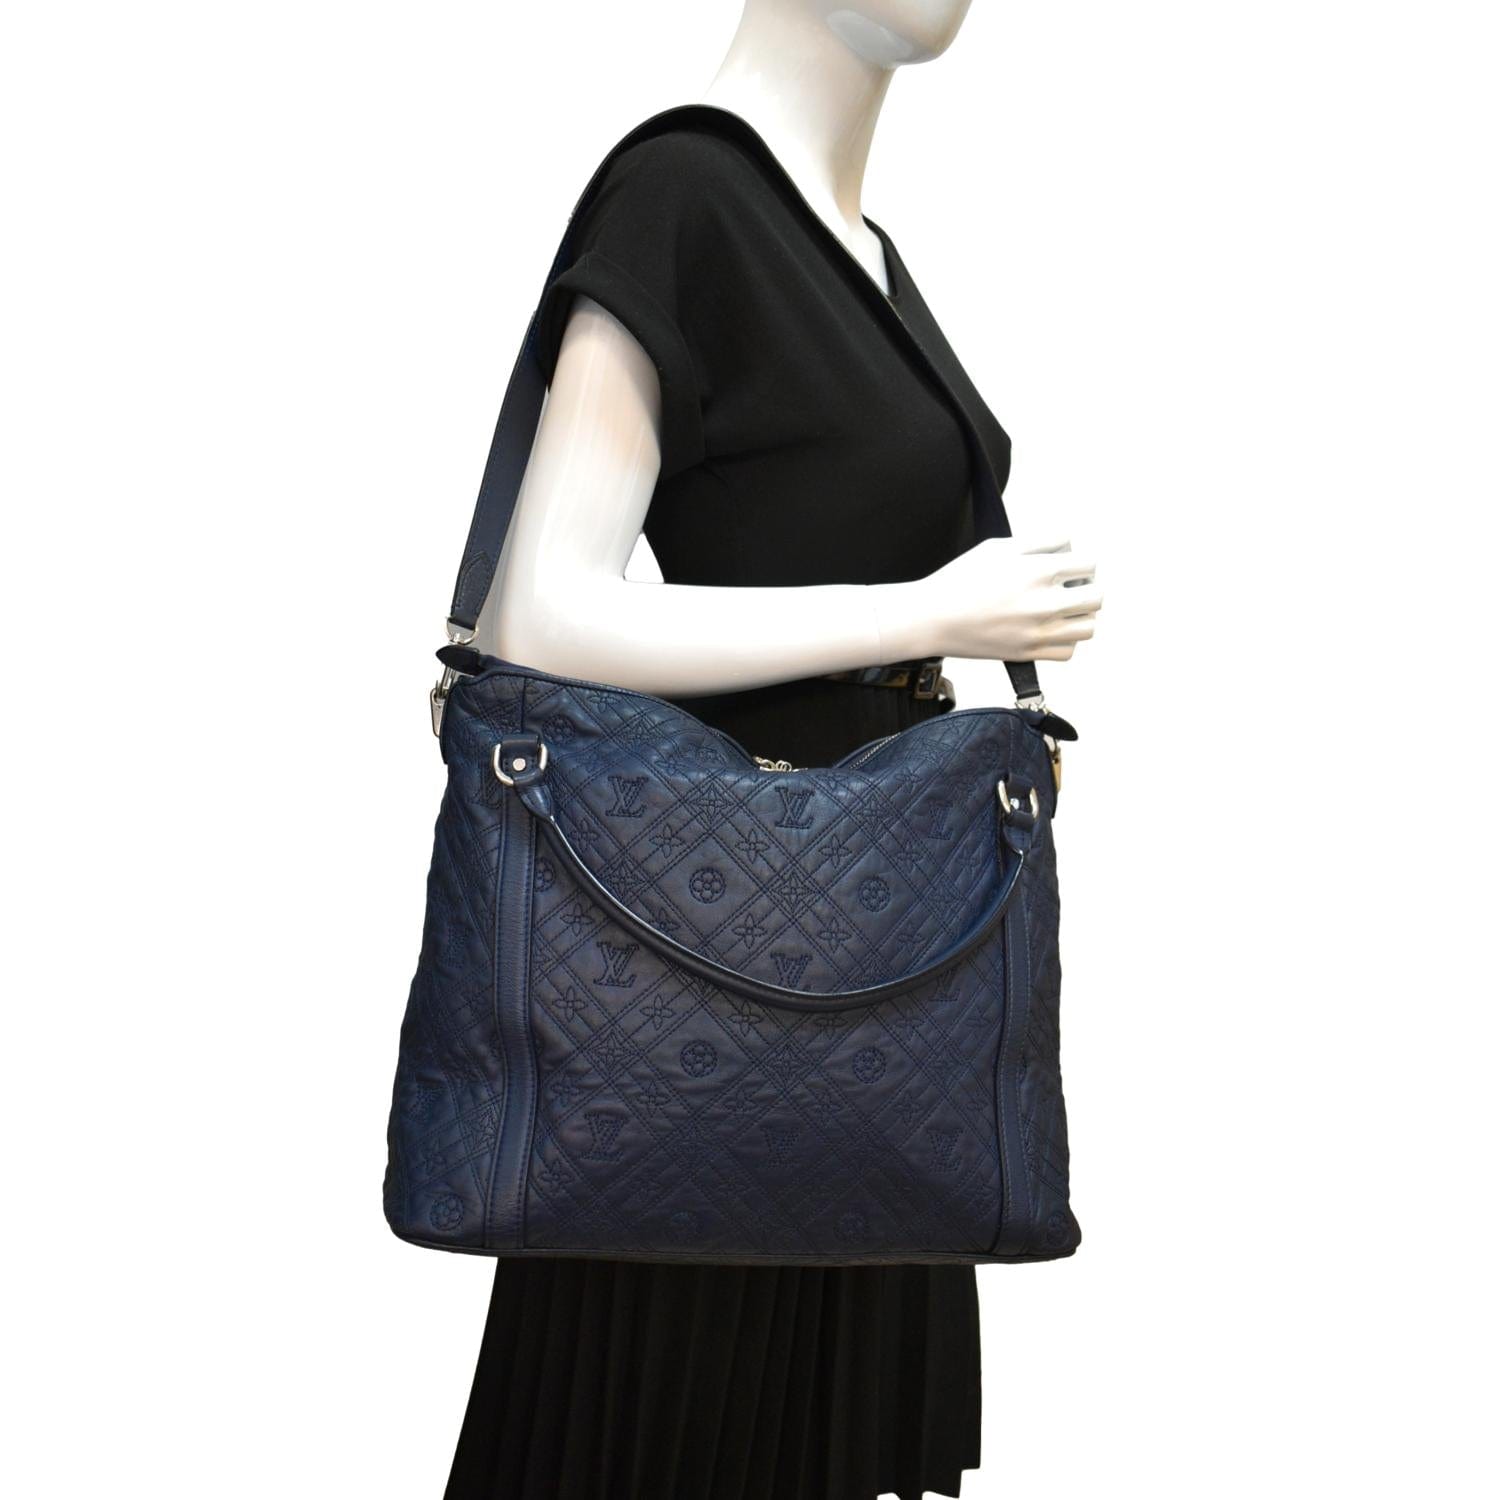 Antheia Ixia Louis Vuitton - For Sale on 1stDibs